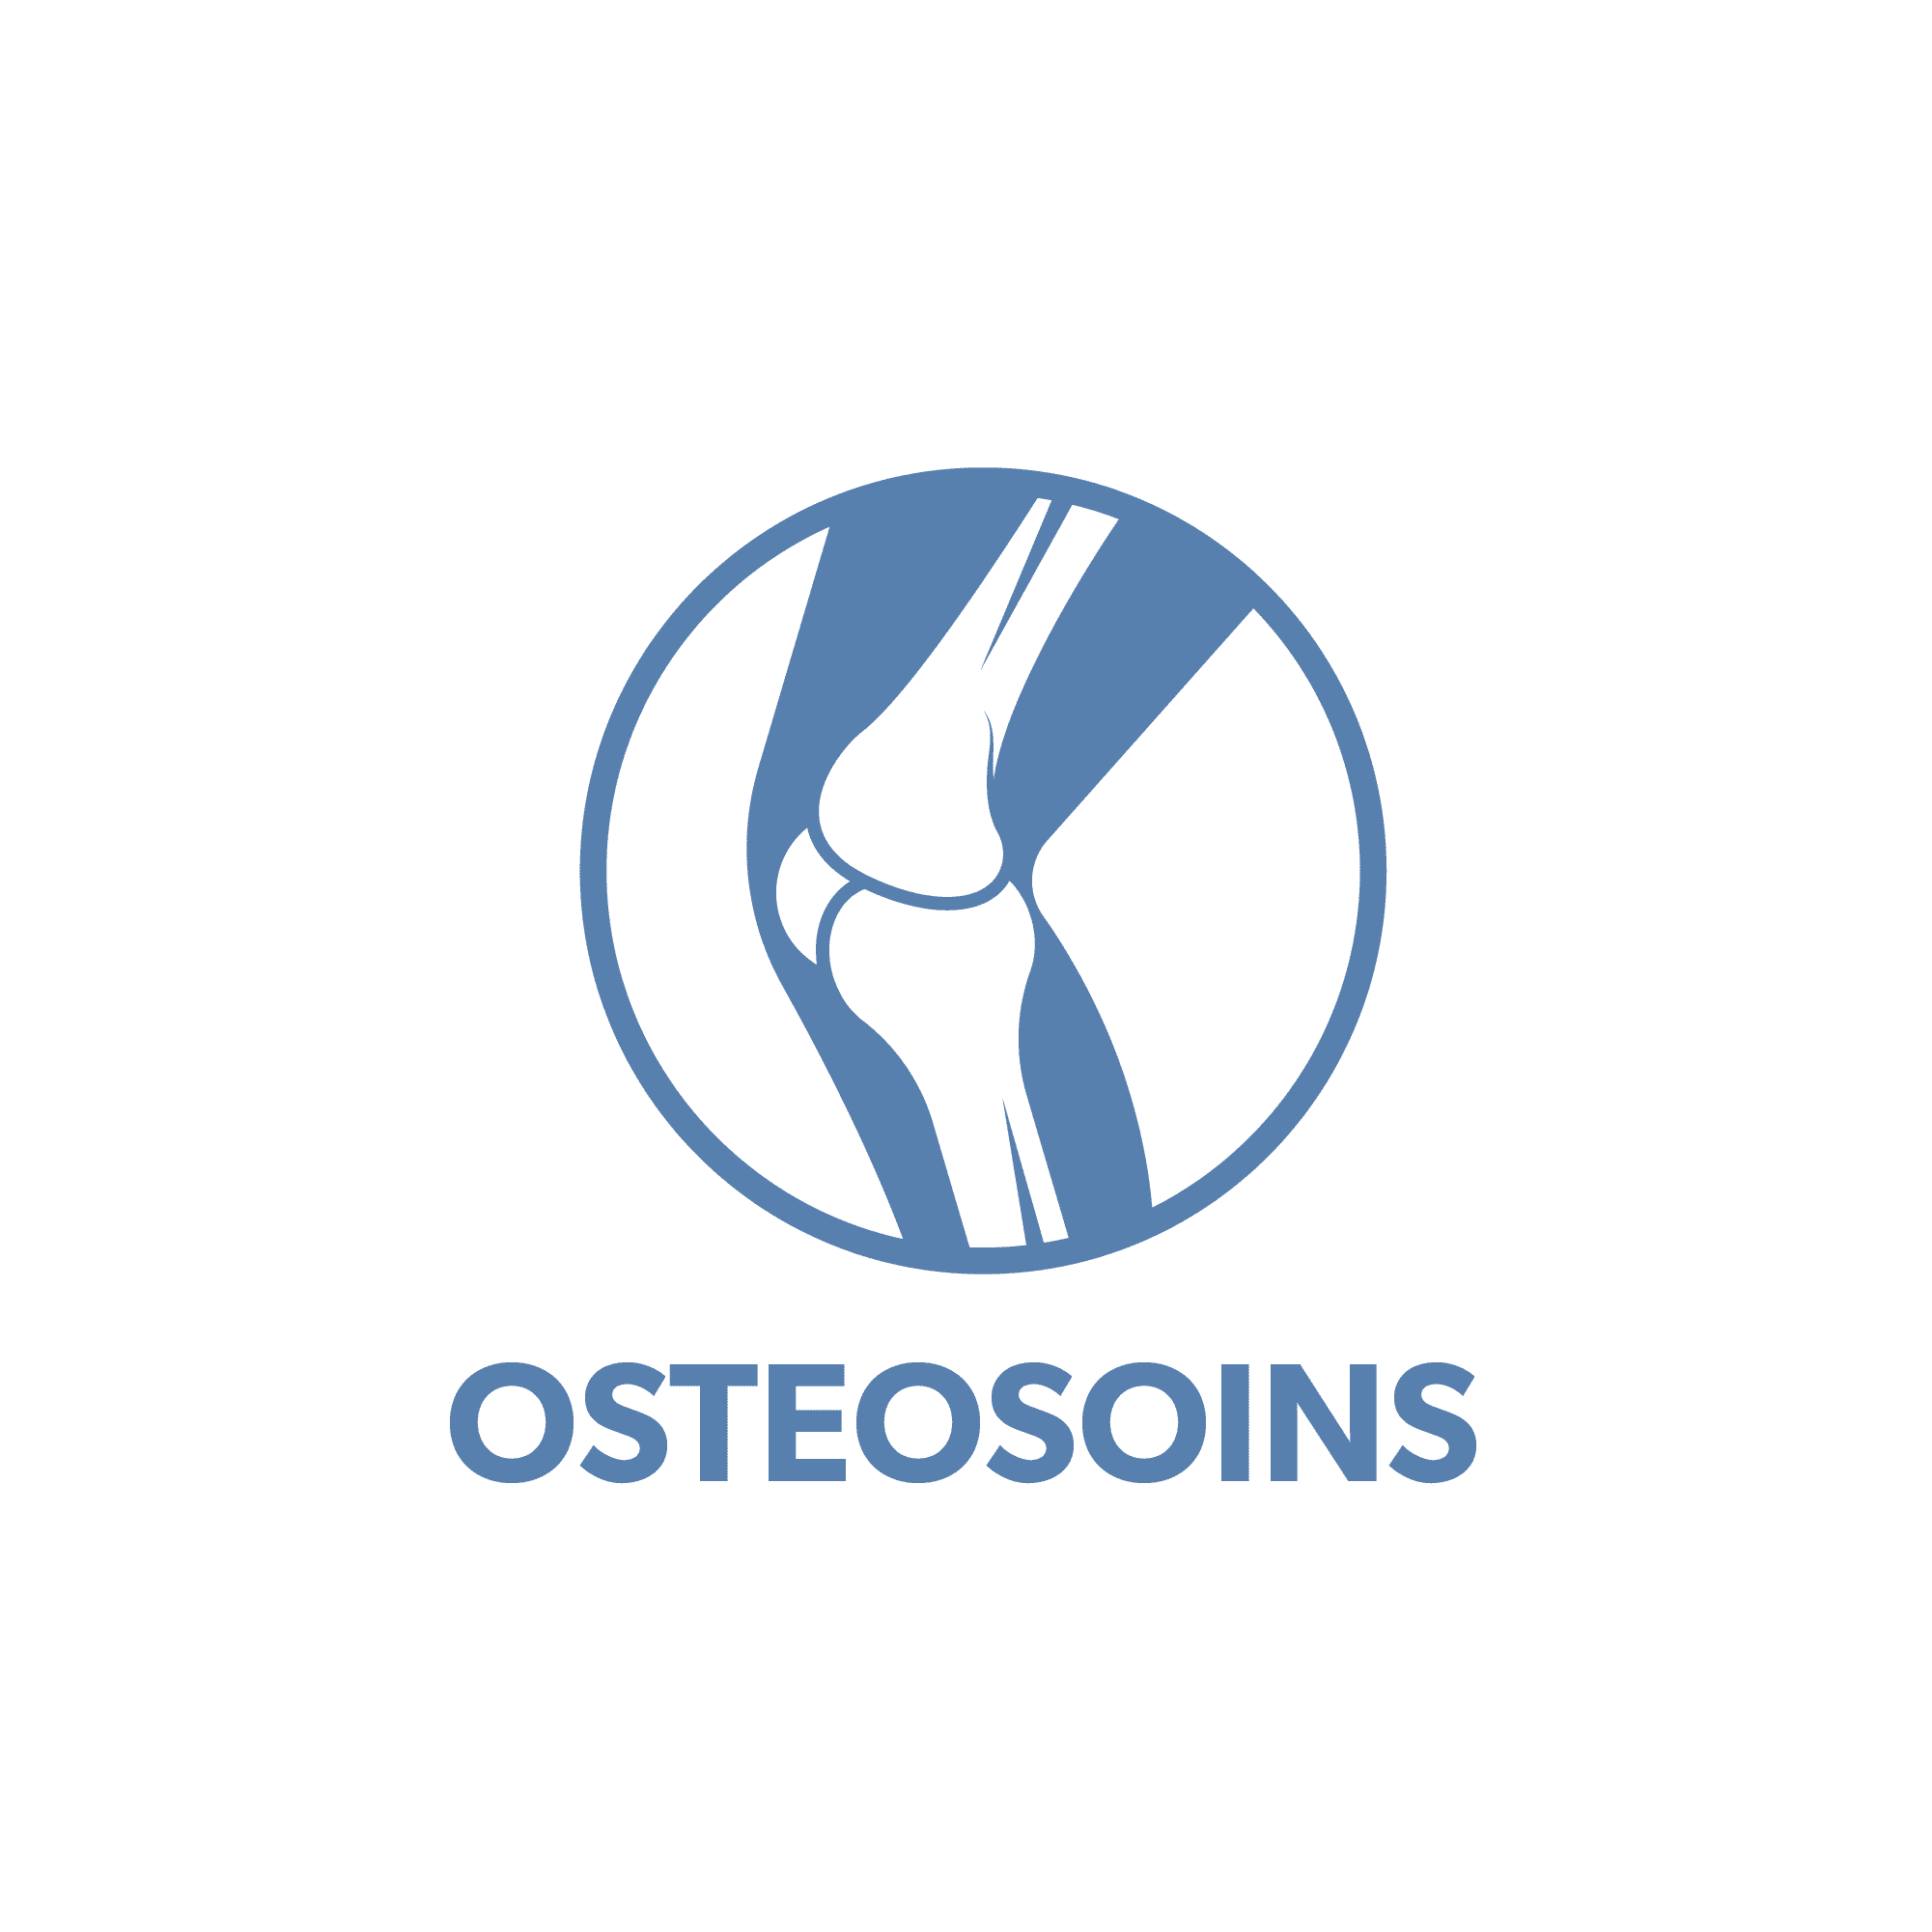 OsteoSoins